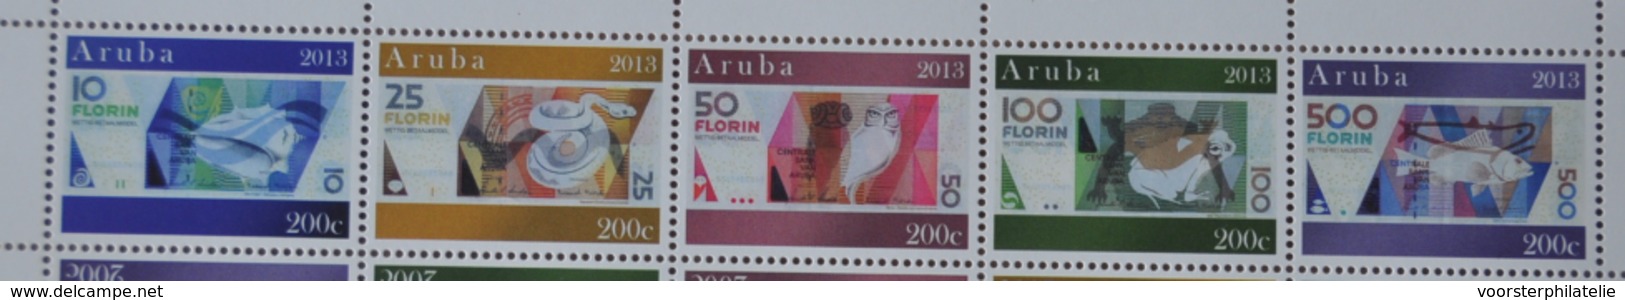 ARUBA 2013 SERIE GELD MONEY  MNH VERY FINE - Curaçao, Nederlandse Antillen, Aruba